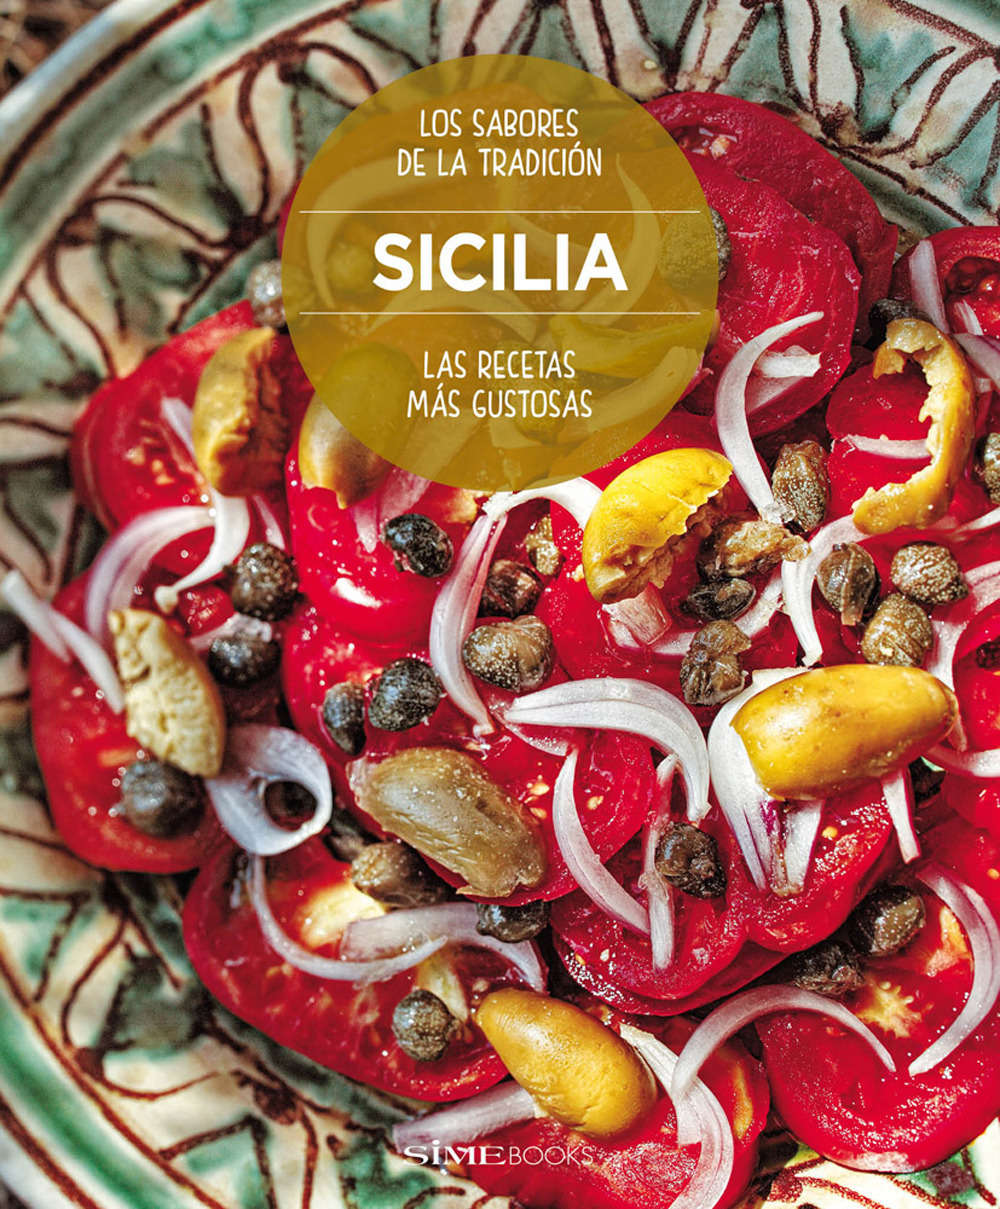 Sicilia. Las recetas más gustosas. Los sabores de la tradición